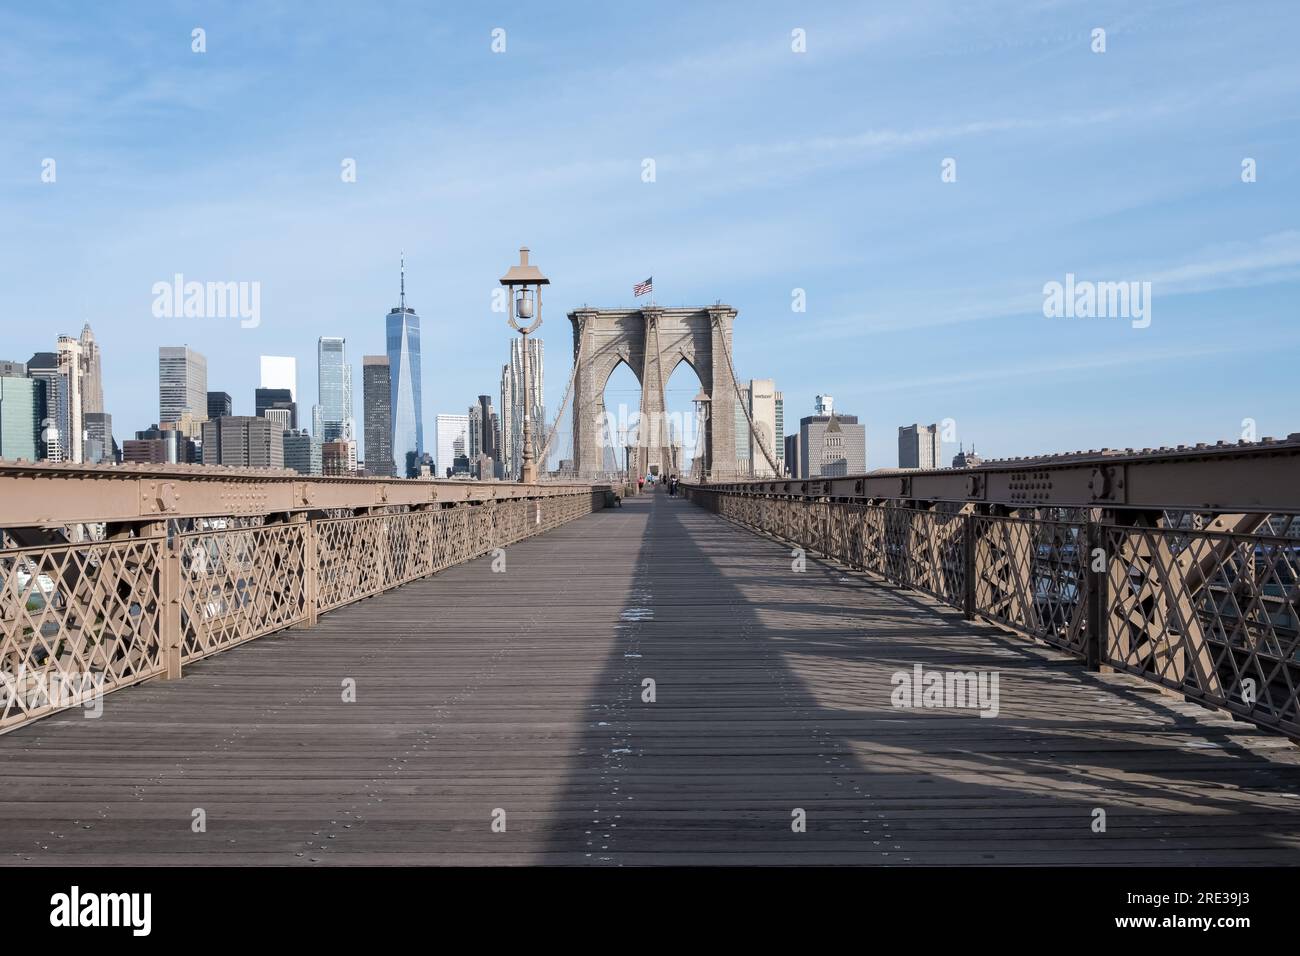 Vista del puente de Brooklyn desde Dumbo, un barrio en el barrio de Brooklyn en la ciudad de Nueva York. Foto de stock